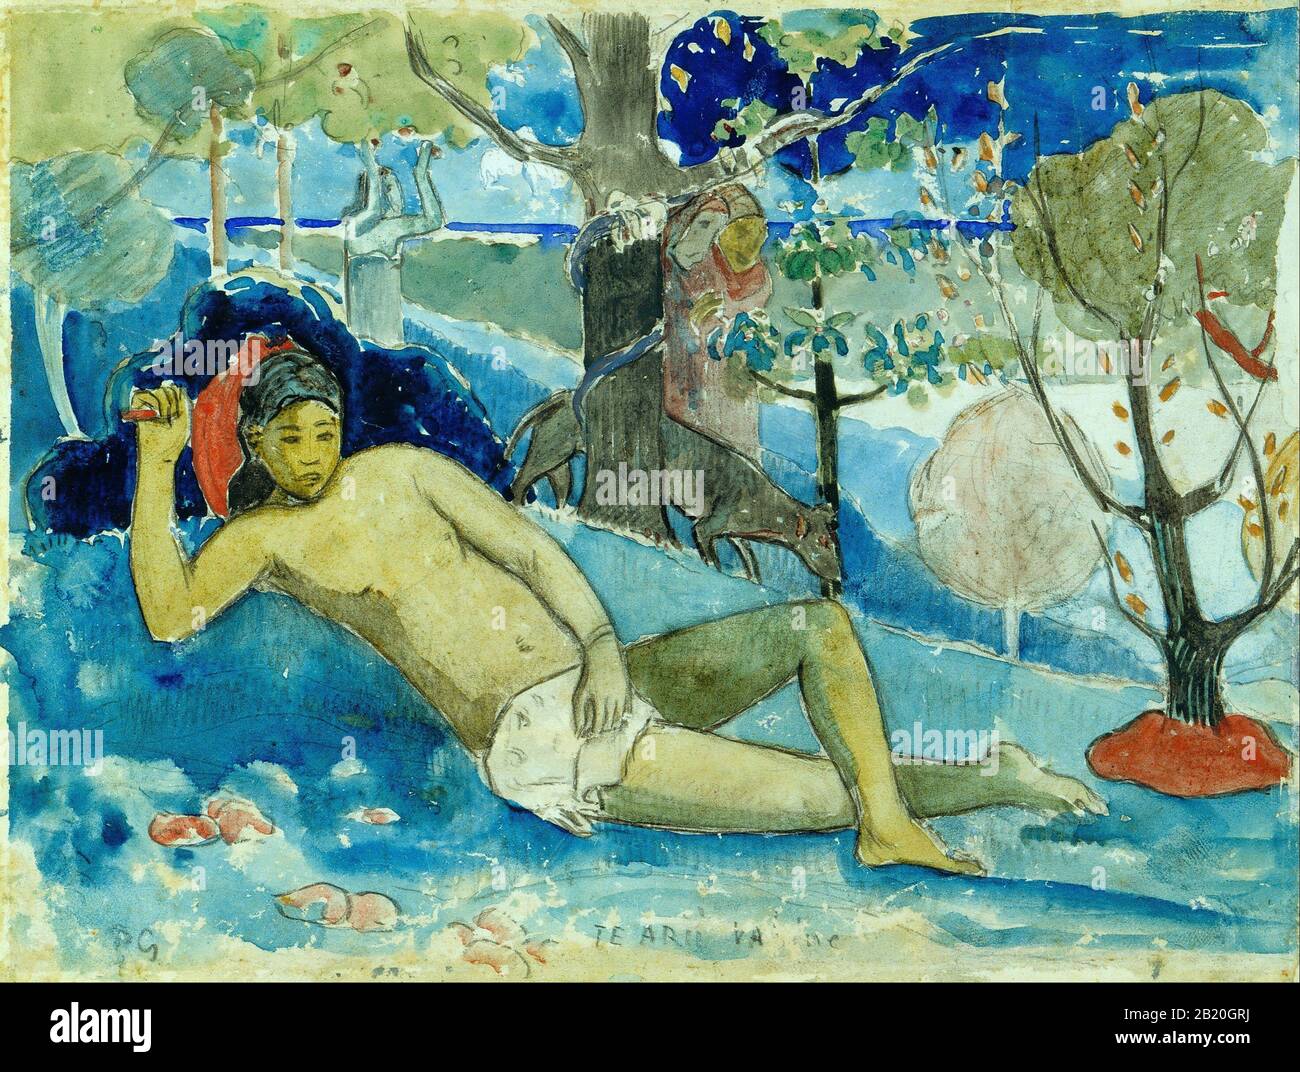 ) Gemälde des 19. Jahrhunderts von Paul Gauguin - Sehr hohe Auflösung und Qualitätsbild Stockfoto